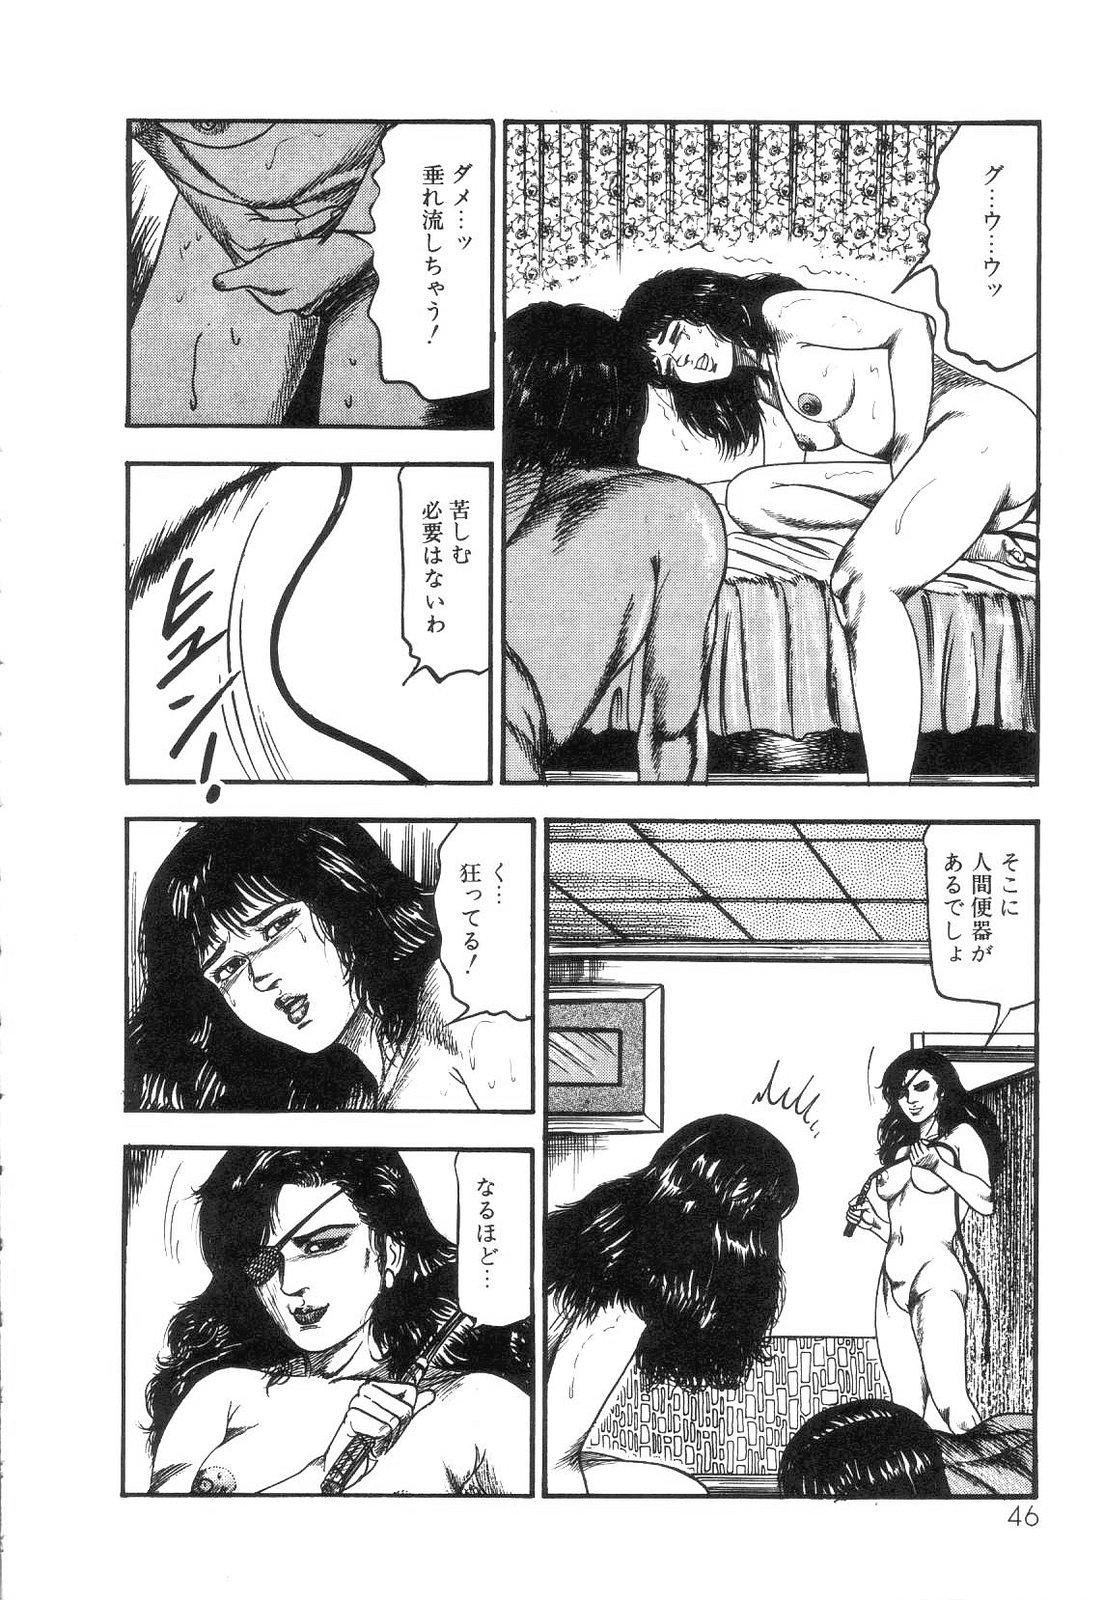 Shiro no Mokushiroku Vol. 4 - Bichiku Karen no Shou 47